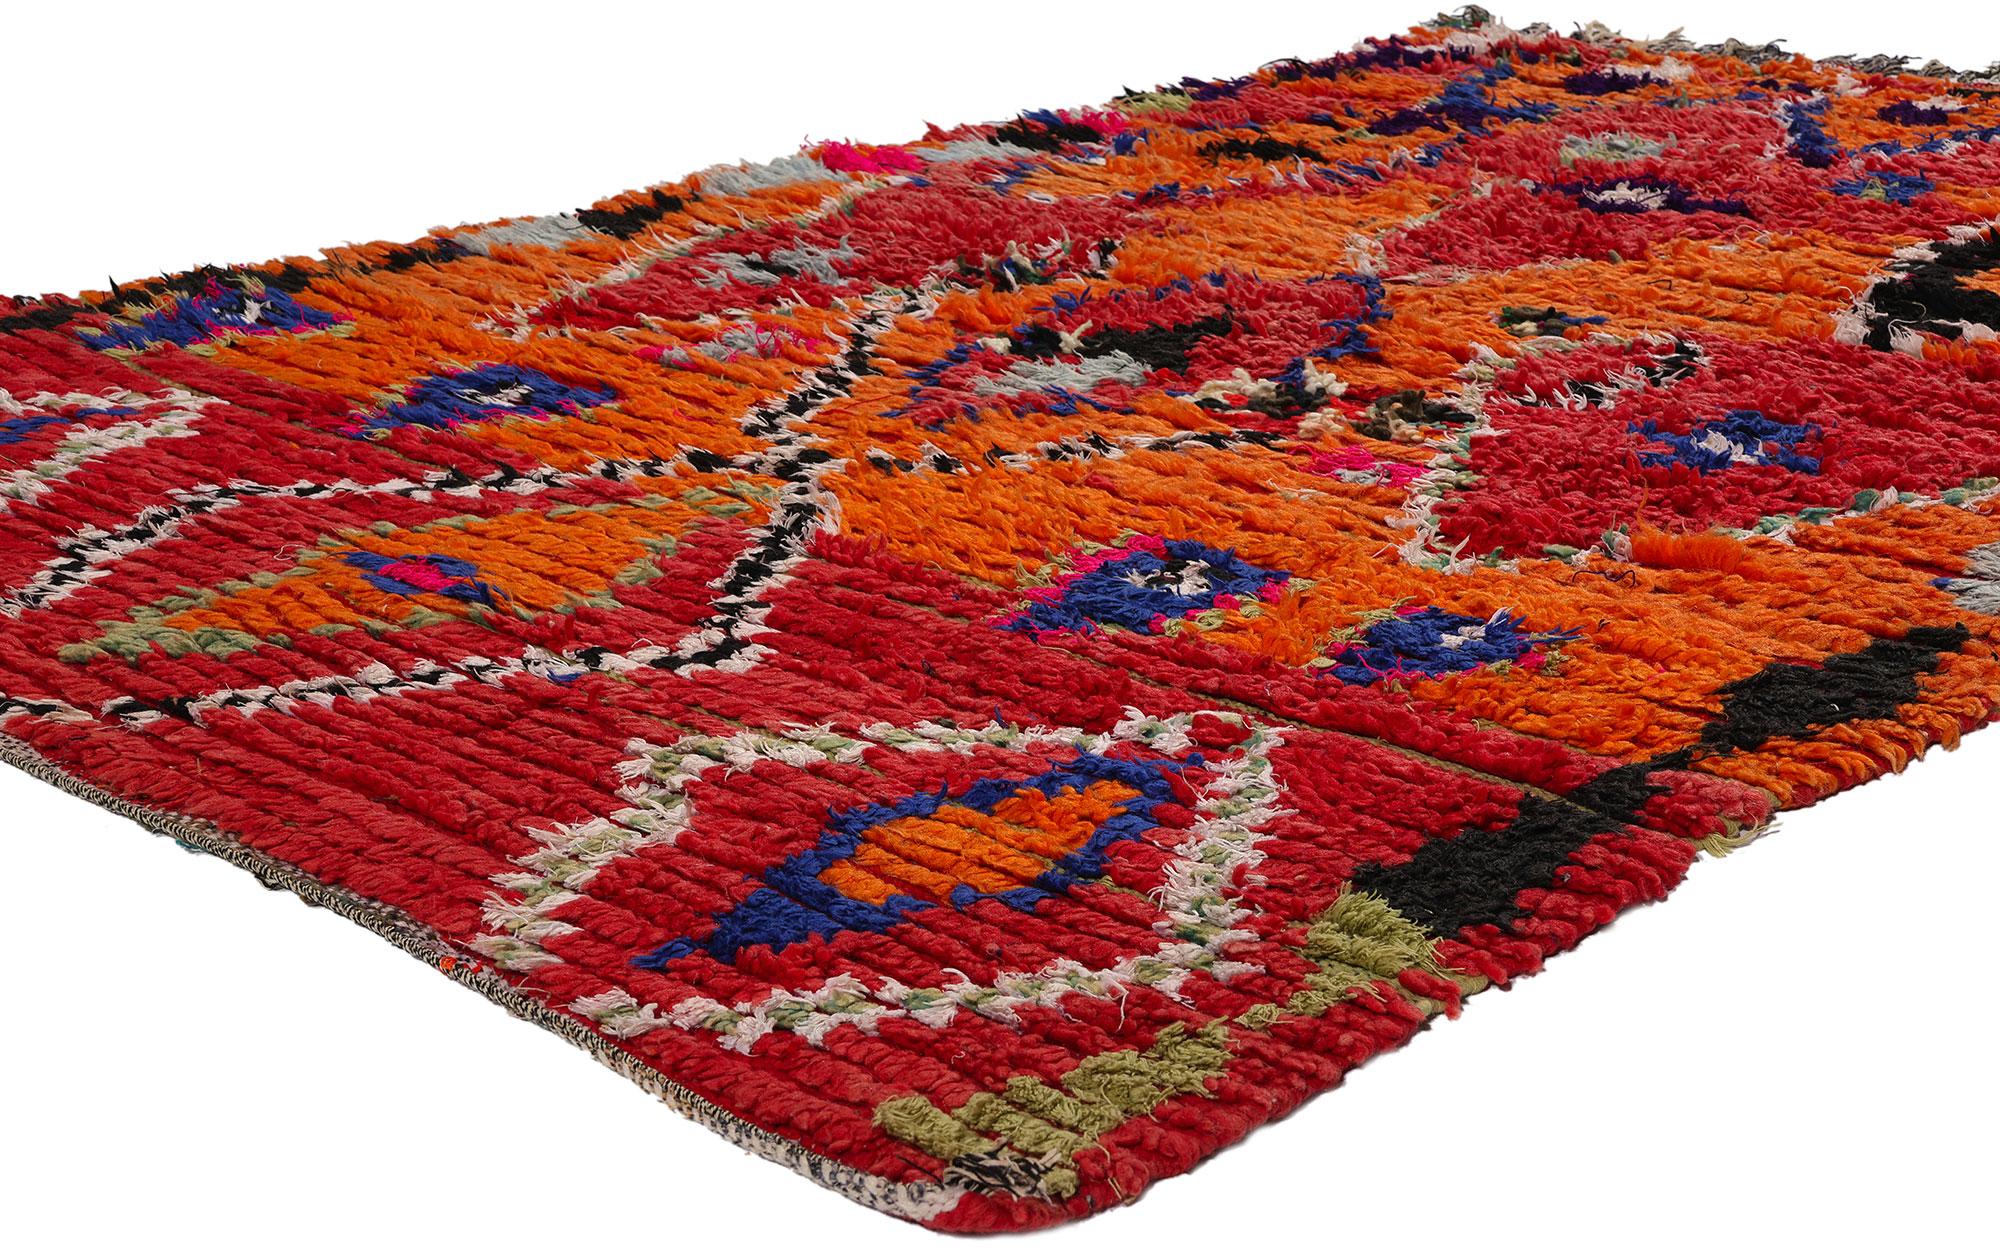 21735 Vintage Rot Marokkanischer Azilal-Teppich, 04'11 x 07'11. Rote marokkanische Azilal-Teppiche stellen eine einzigartige Facette traditioneller marokkanischer Handwerkskunst dar, die von geschickten Berber-Kunsthandwerkern aus der Azilal-Region